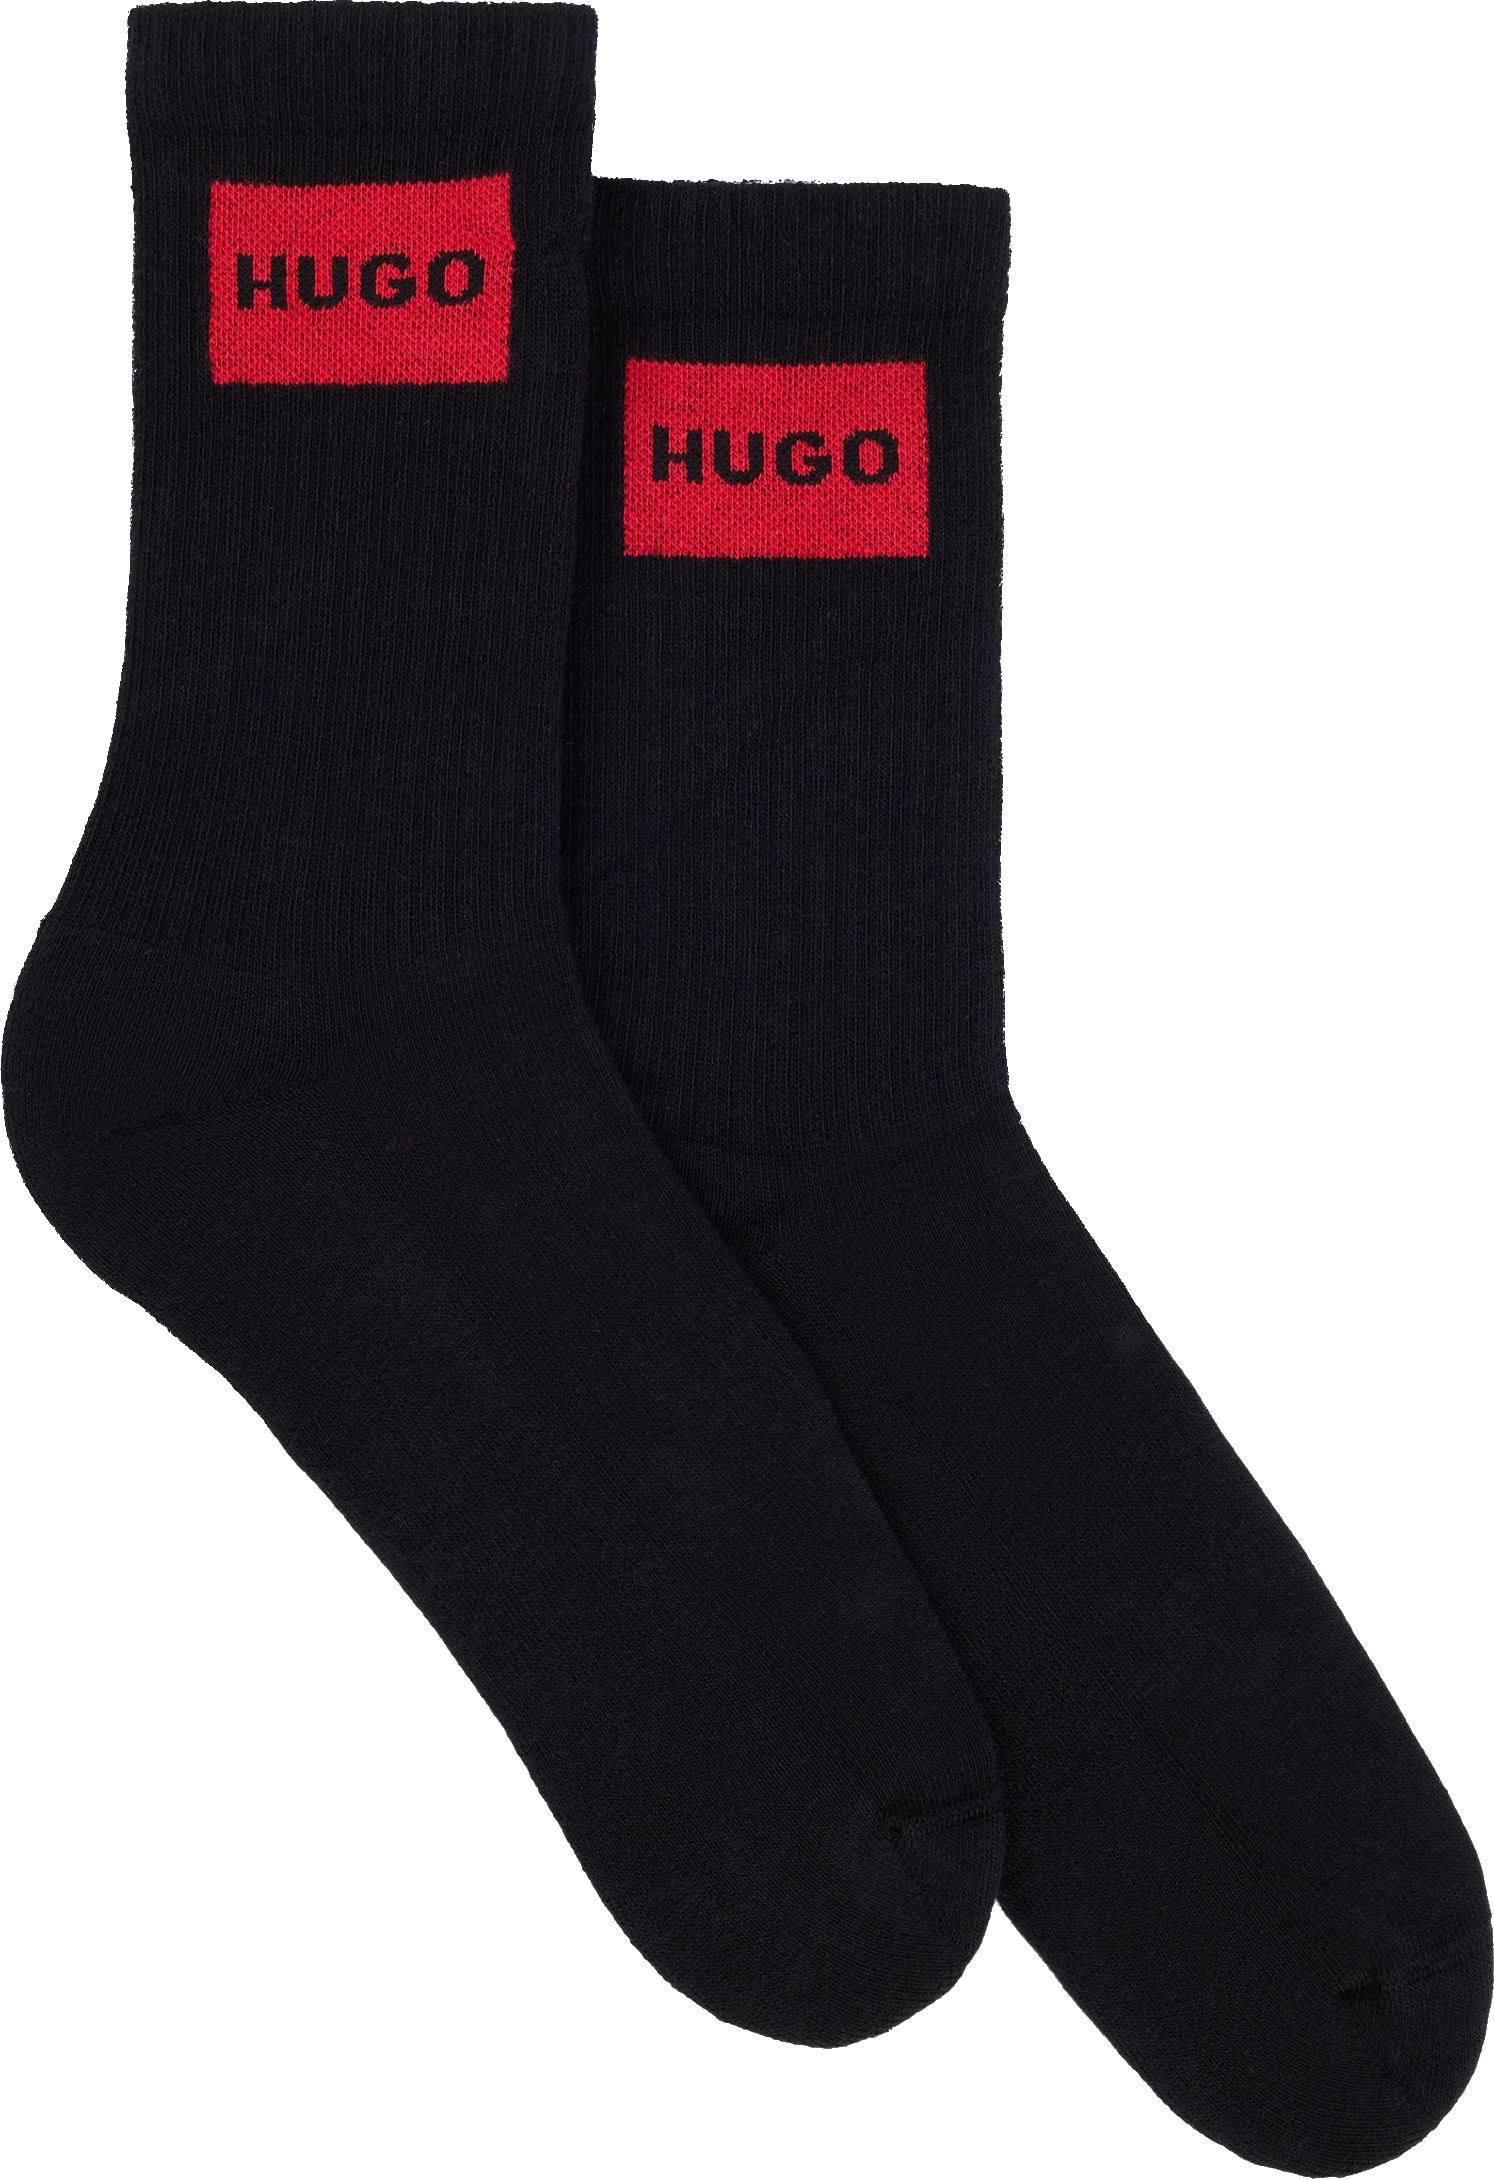 Hugo Boss 2 PACK - pánské ponožky HUGO 50510640-001 39-42